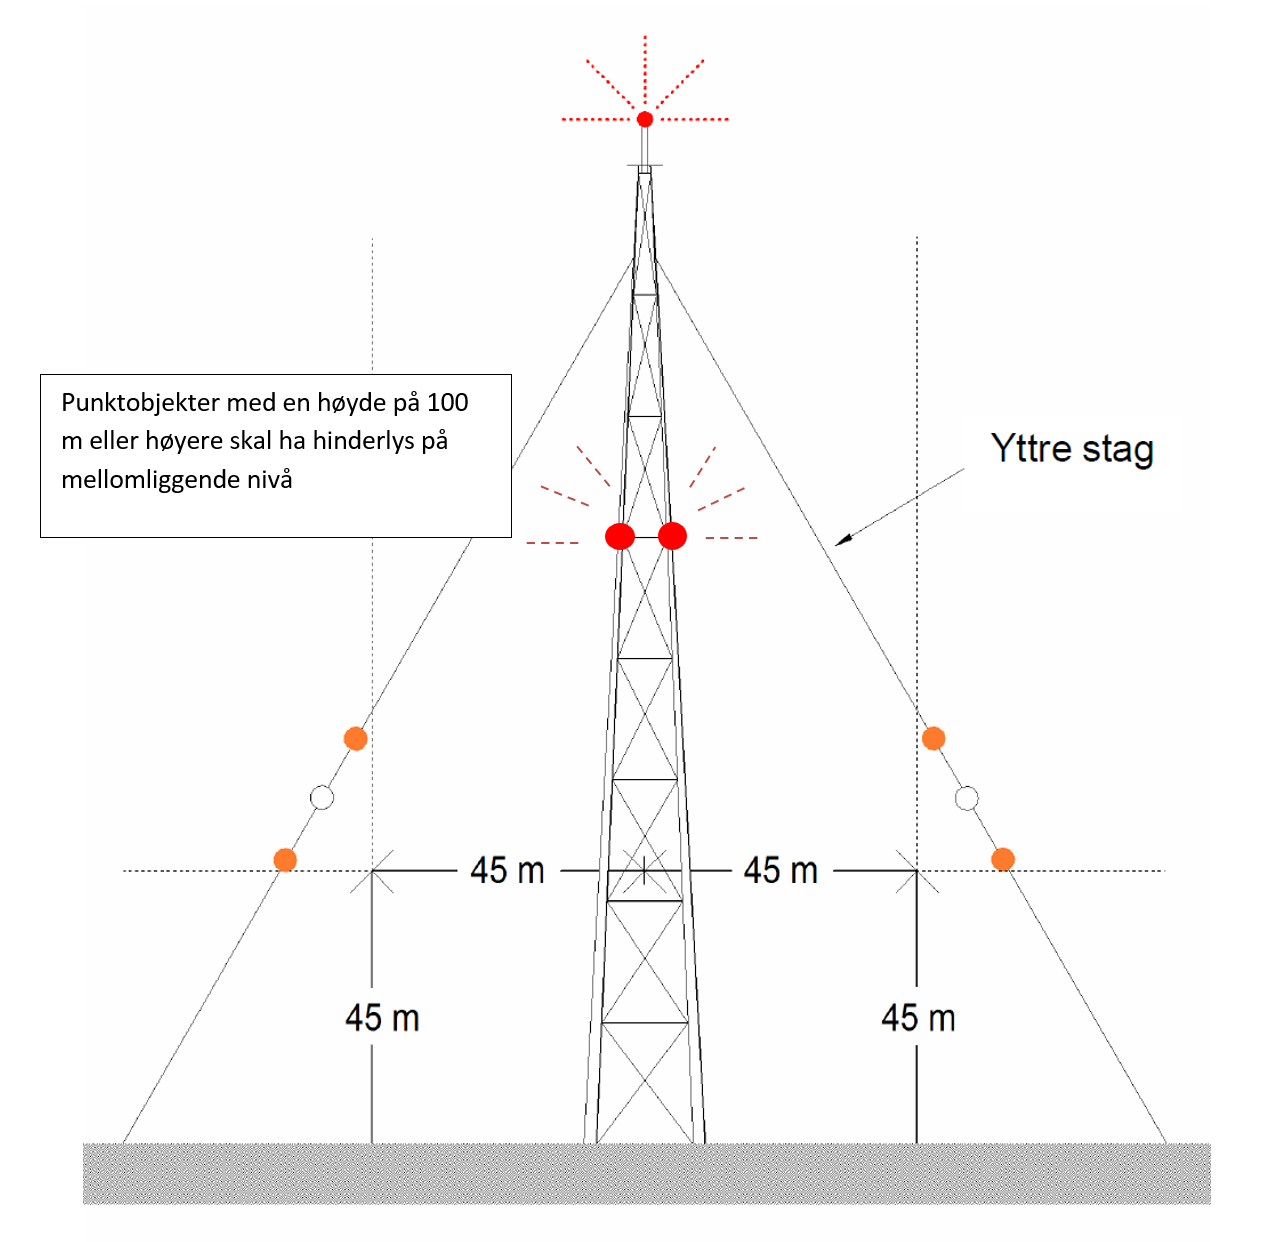 Illustrasjon av mast med røde punkter som illustrerer hvor hinderlys skal plasseres på hinder over 100 meter.